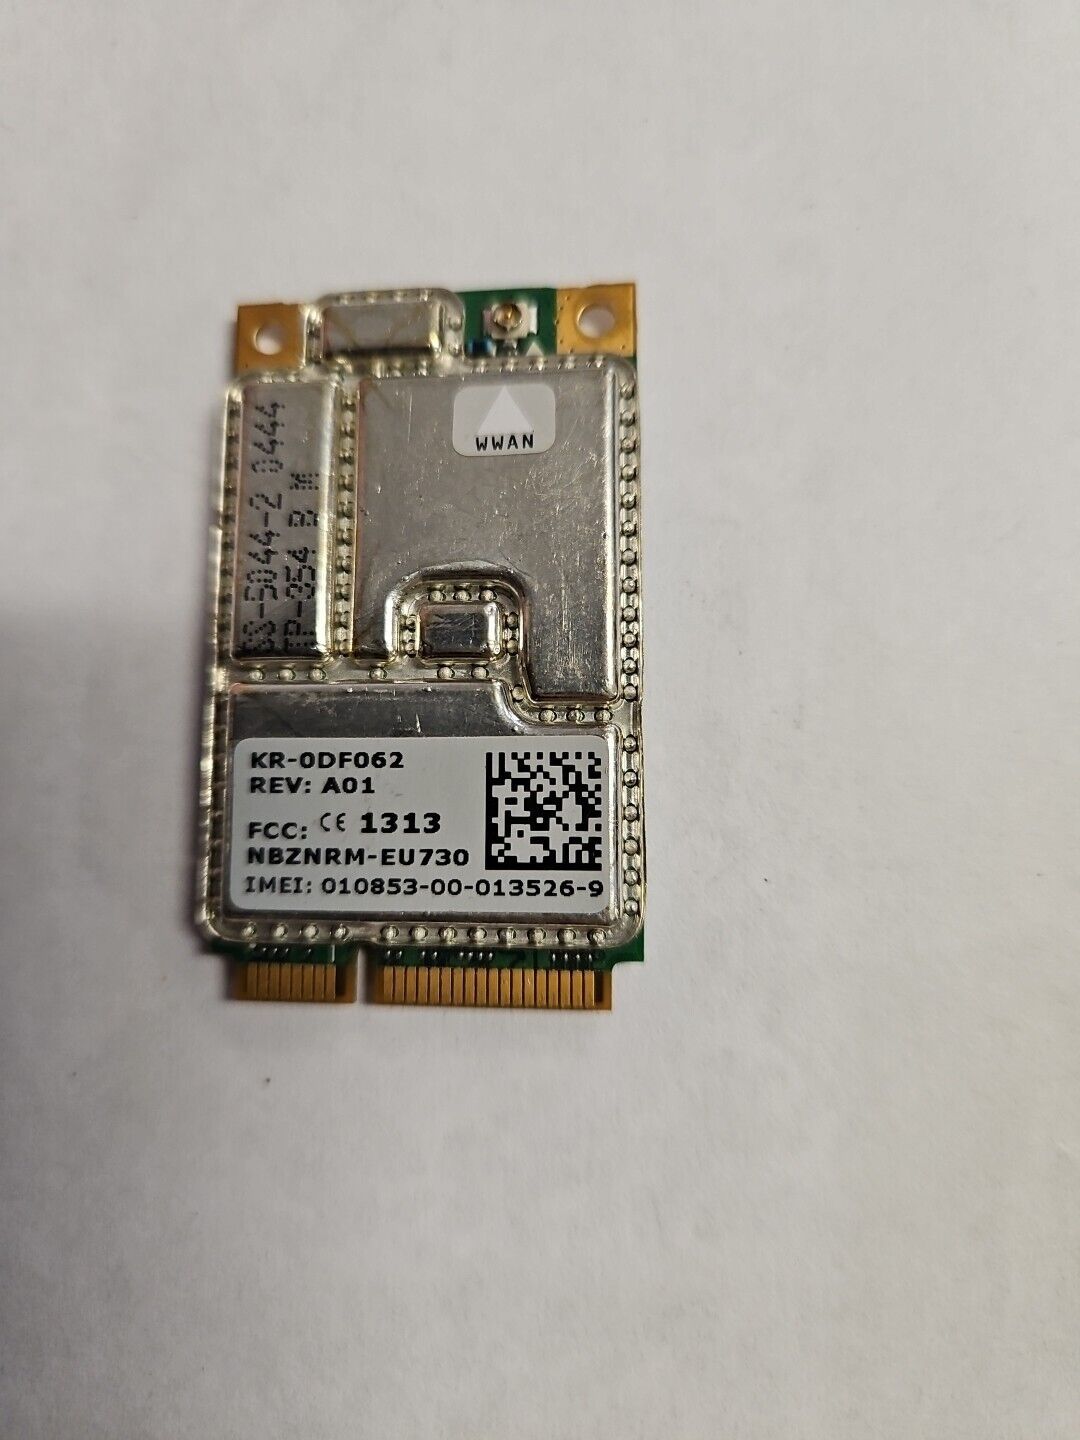 Original Dell Wireless 5500 Mobile Broadband Mini-PCI Card DF062/ KR-0DF062